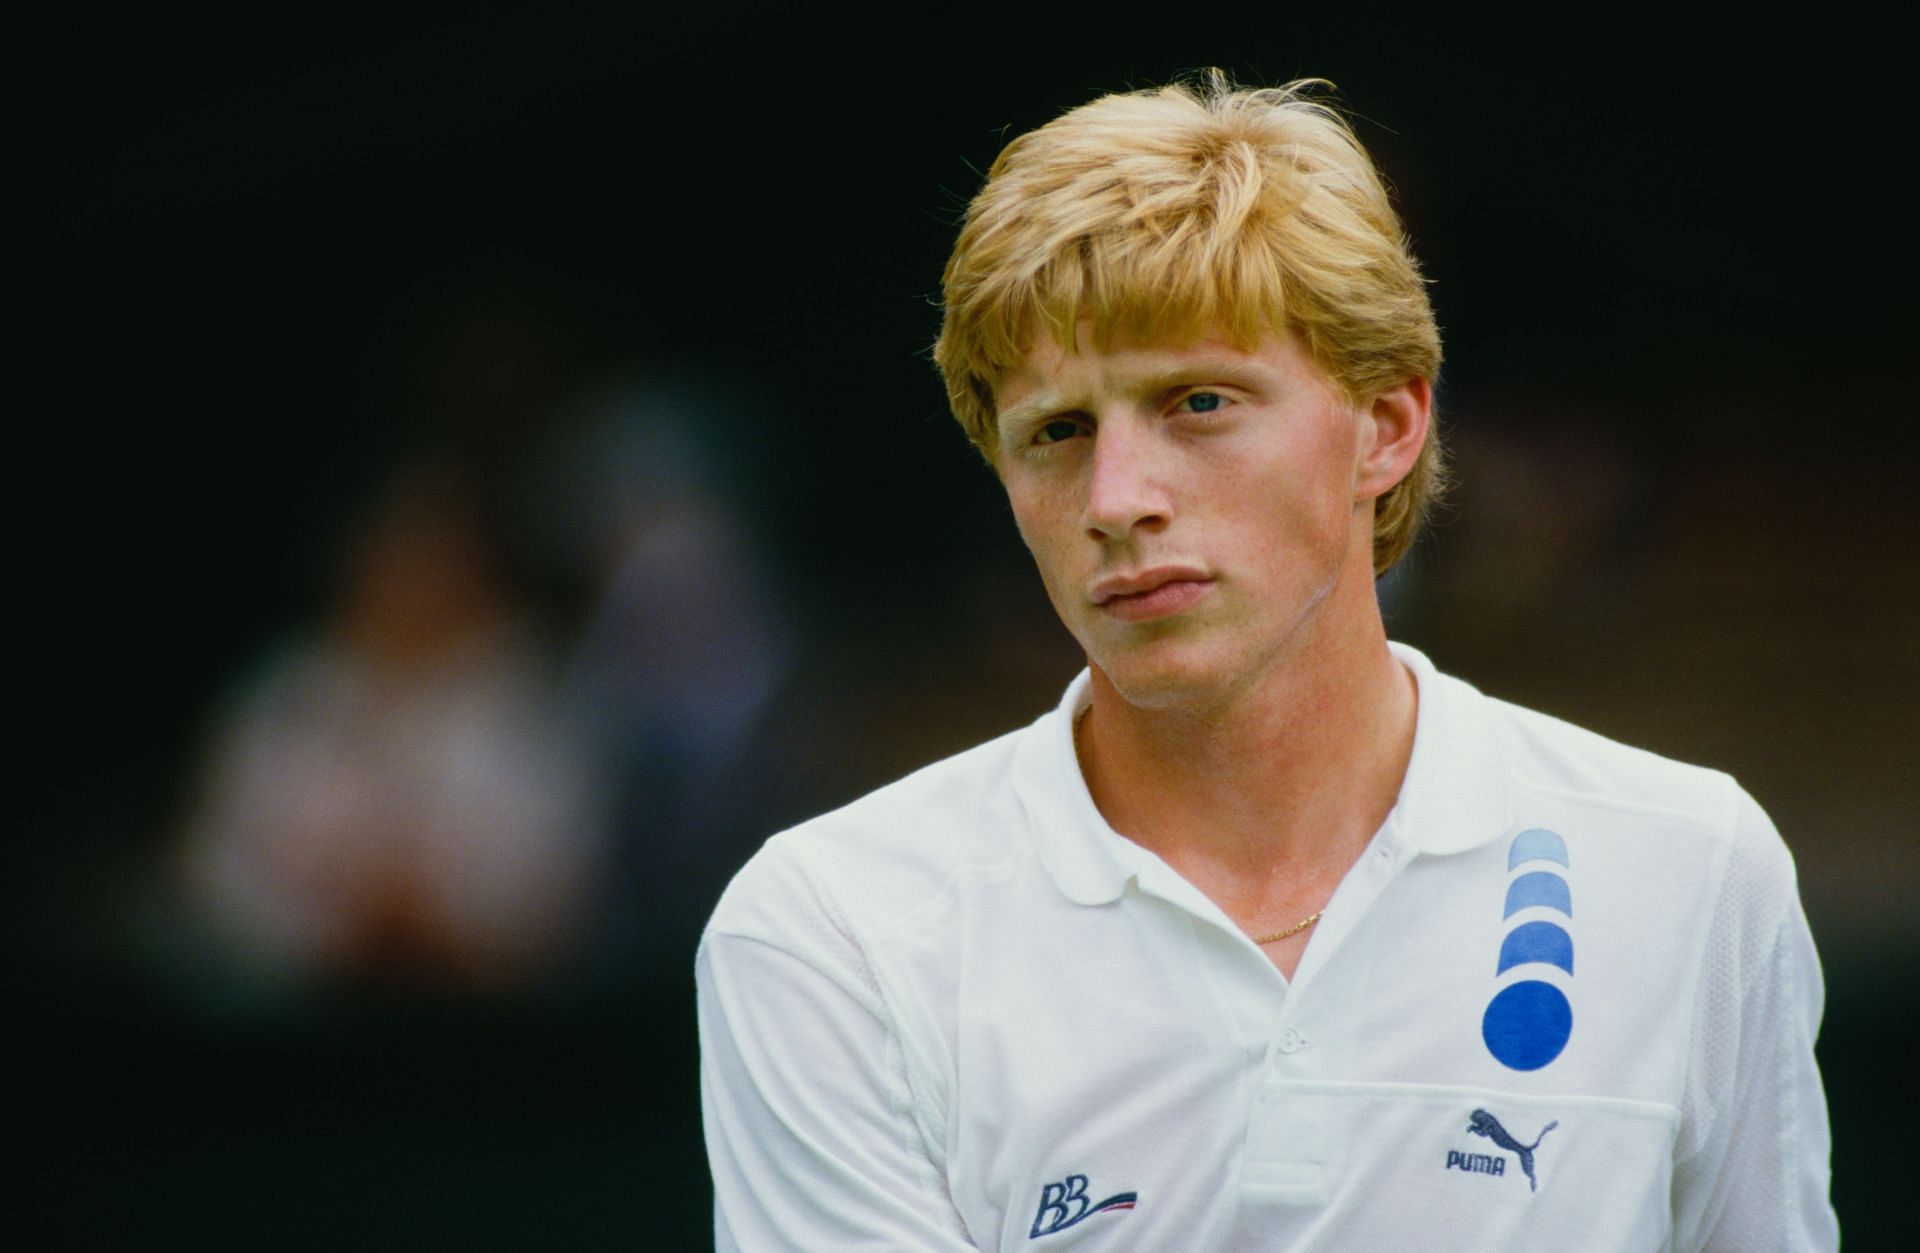 Boris Becker at Wimbledon 1987